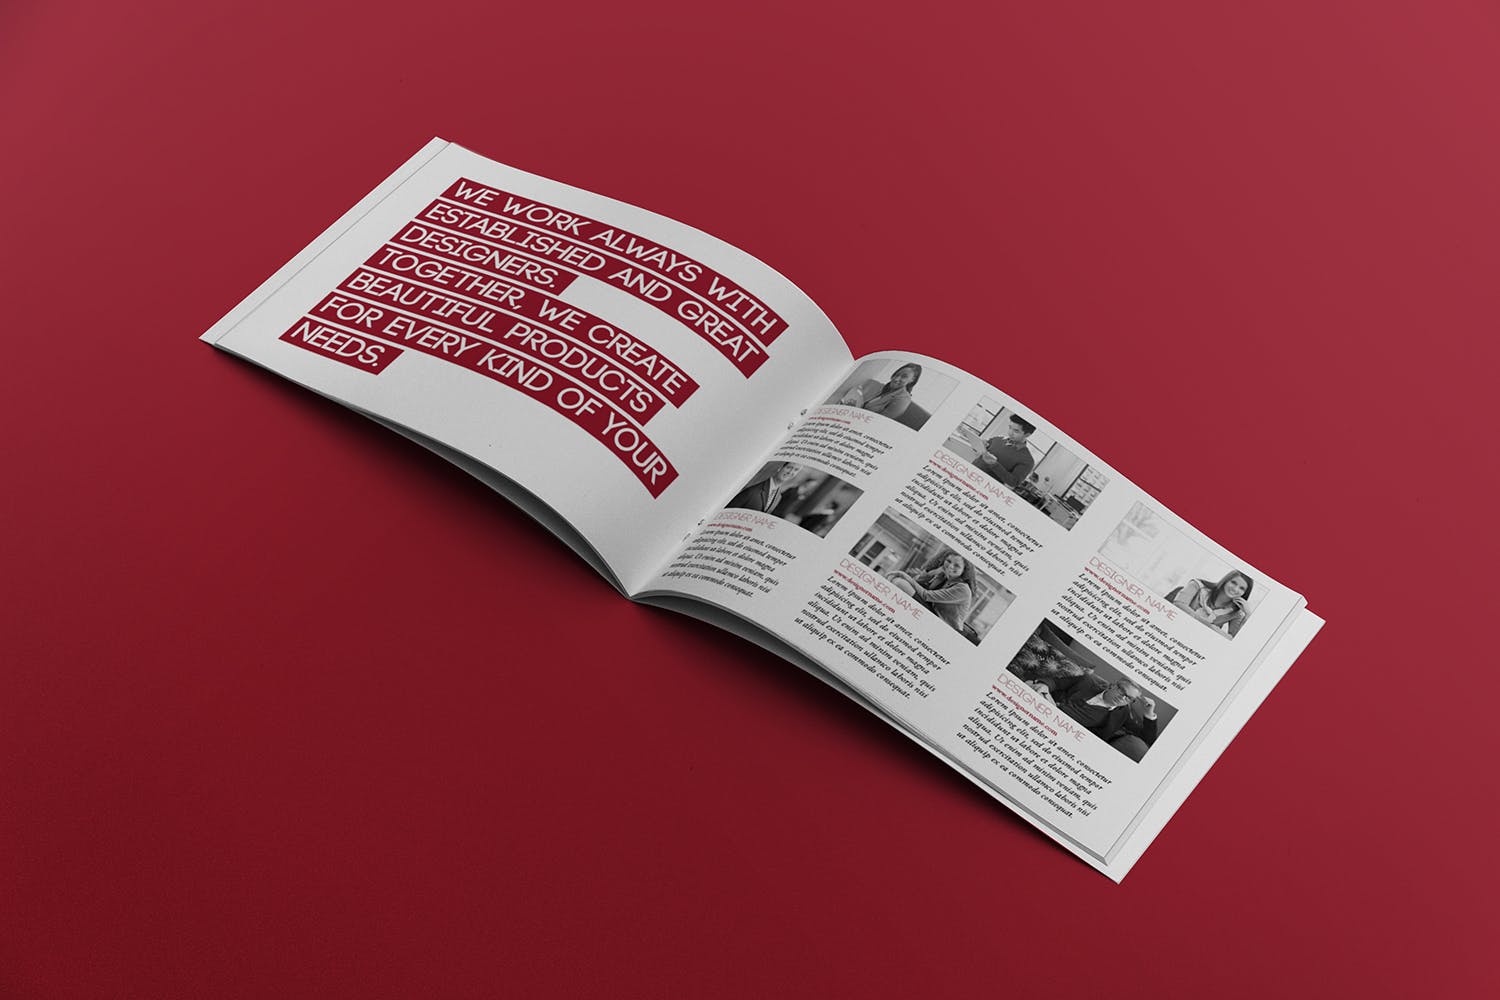 宣传画册/企业画册内页版式设计图样机普贤居精选 Open Landscape Brochure Mockup插图(2)